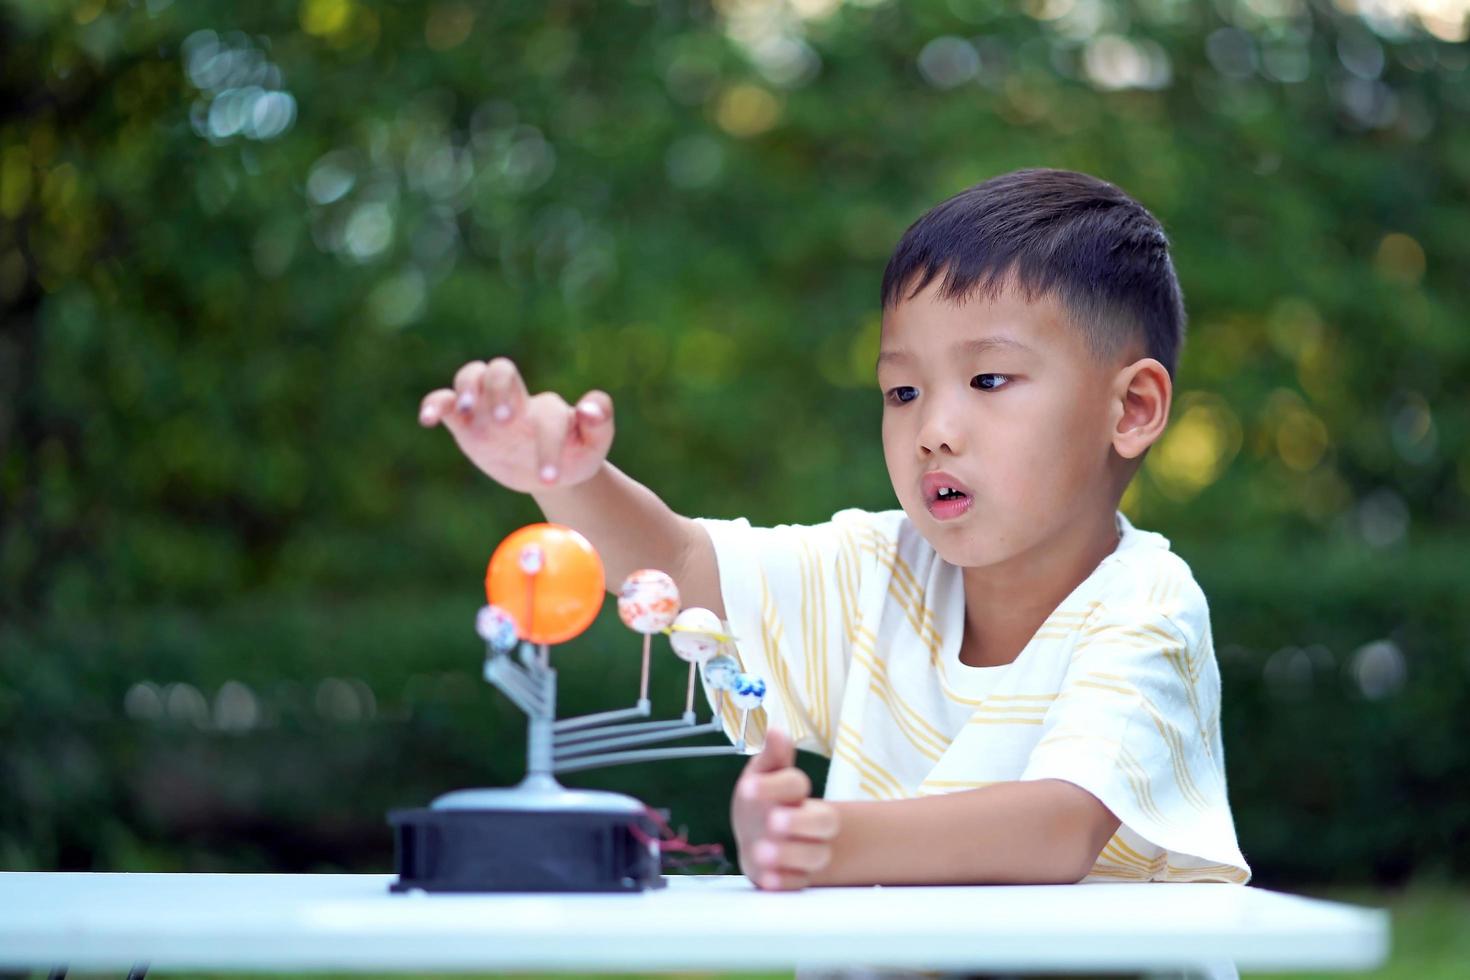 jouets du système solaire vivant pour garçon asiatique, équipement d'apprentissage à domicile, lors d'un nouveau changement normal après le coronavirus ou la situation de pandémie post-épidémie de covid-19 photo